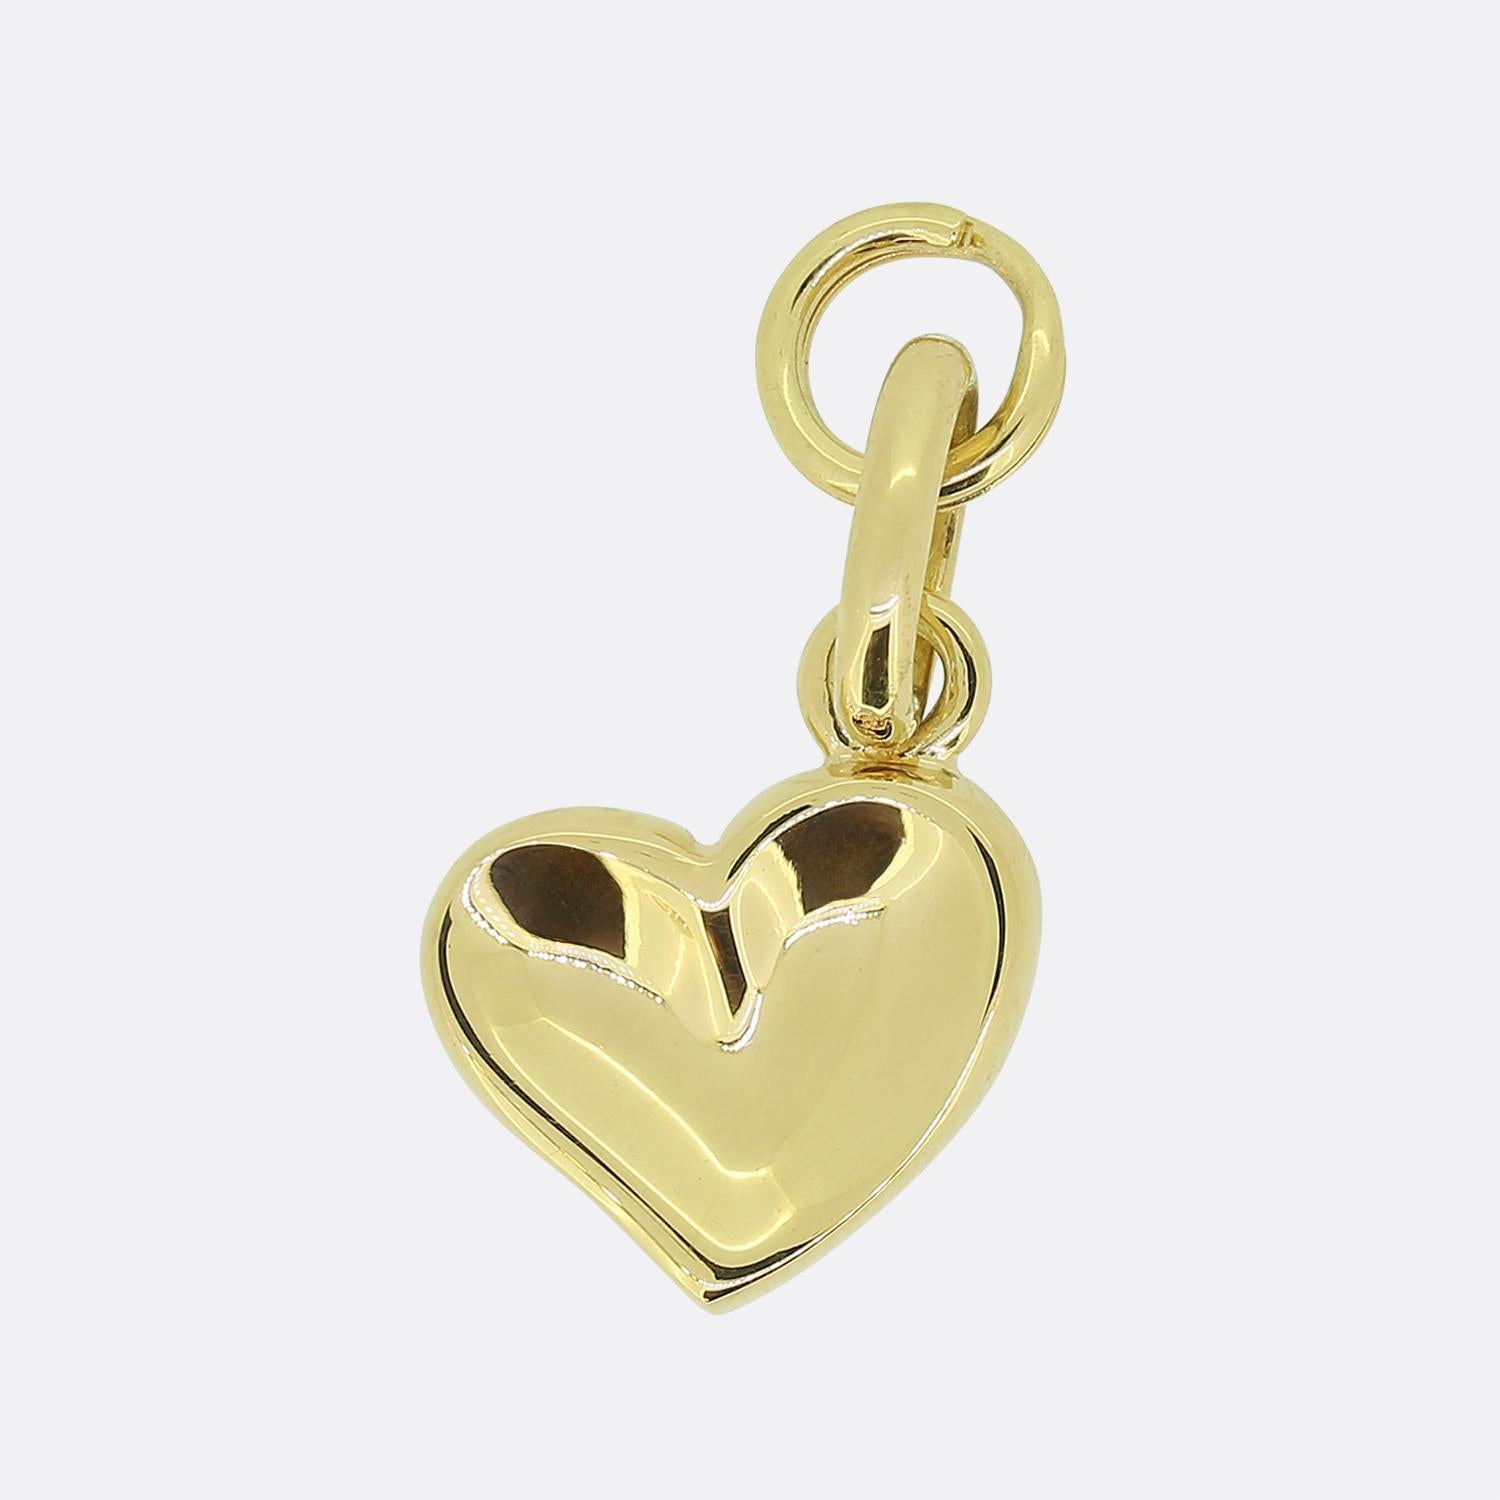 Aquí tenemos un colgante de oro amarillo de 18 ct del mundialmente conocido diseñador de joyas británico (ya retirado) Links of London. Esta pieza en concreto tiene la forma de un corazón de amor impreso con el pulgar. Debido a su tamaño, este